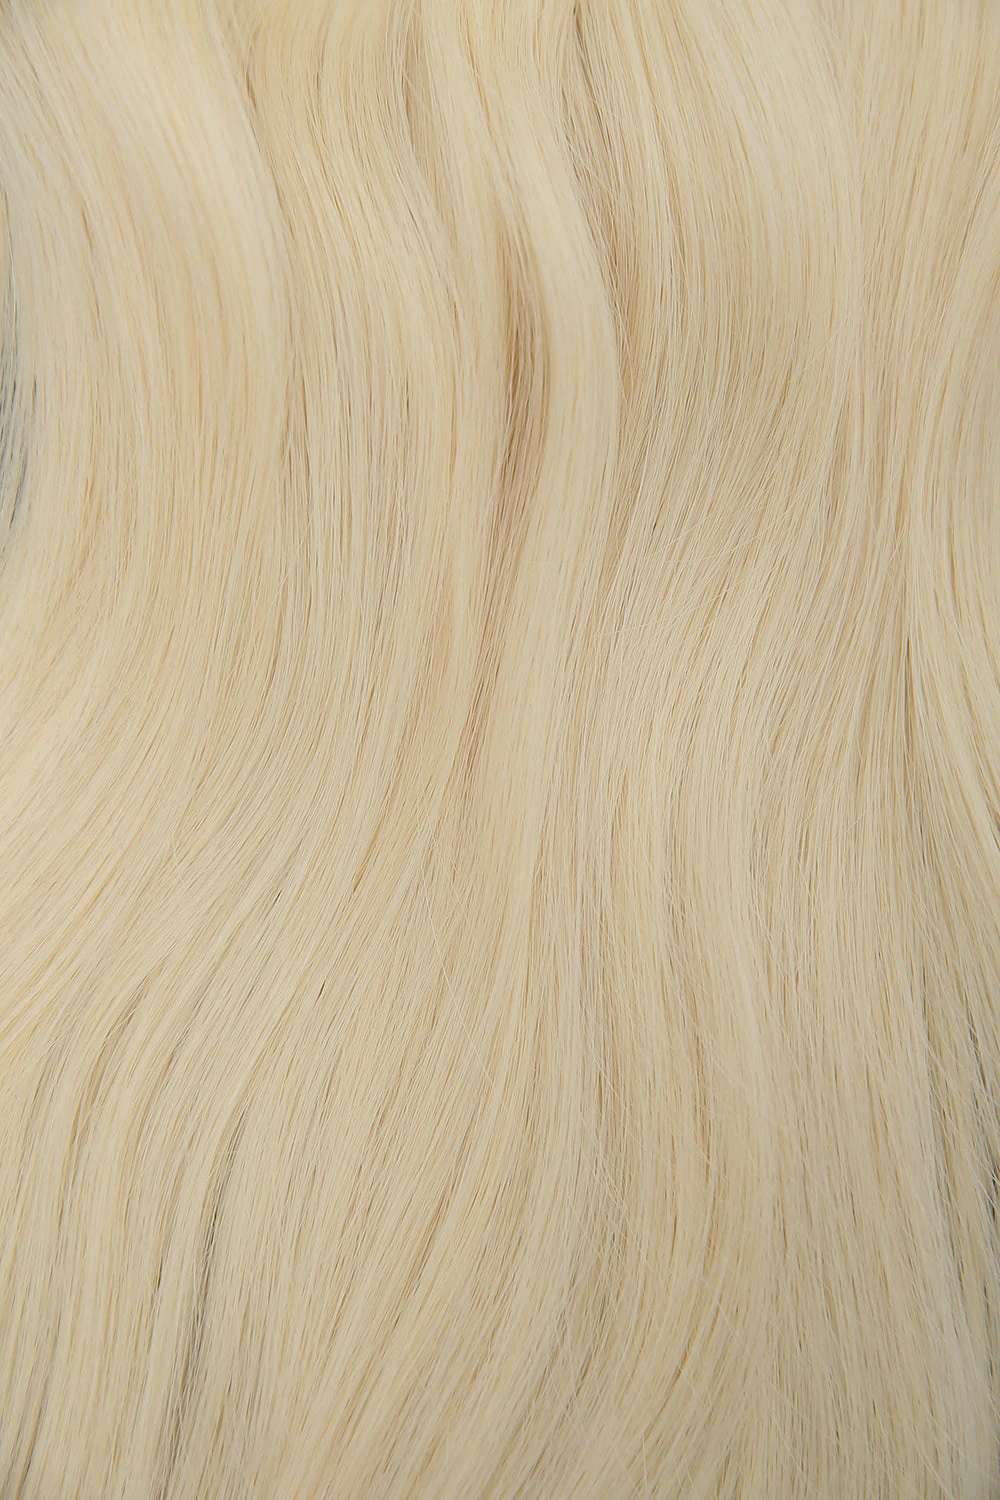 #613 Platinum Blonde Genius Weft Hair Extensions